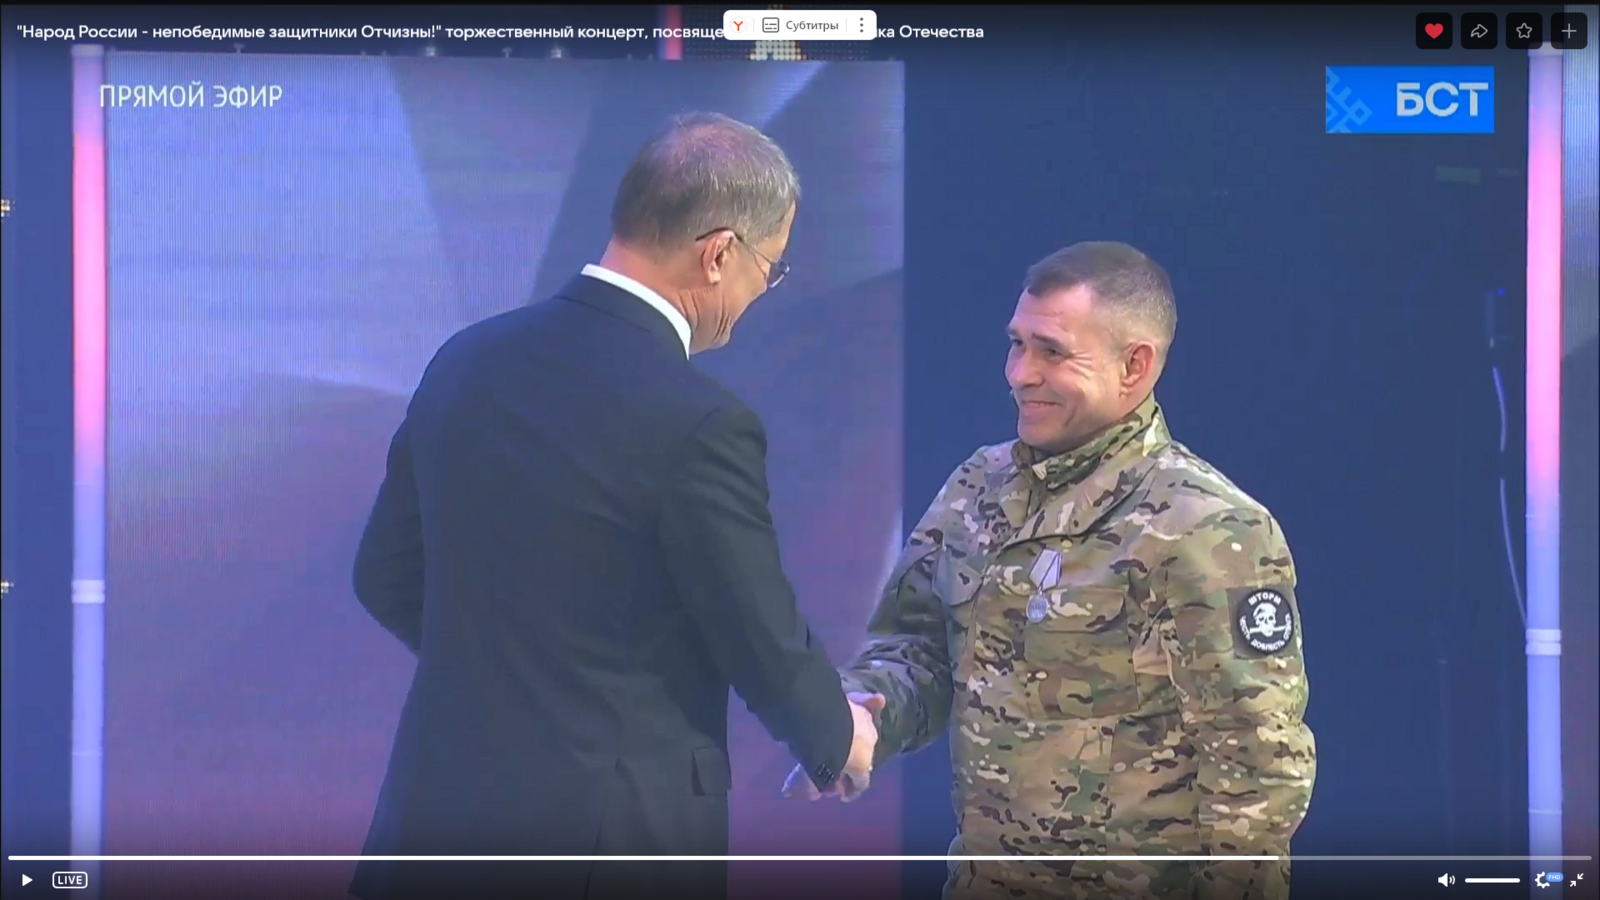 Командир штурмового отряда из Башкирии получил награду в День защитника Отечества